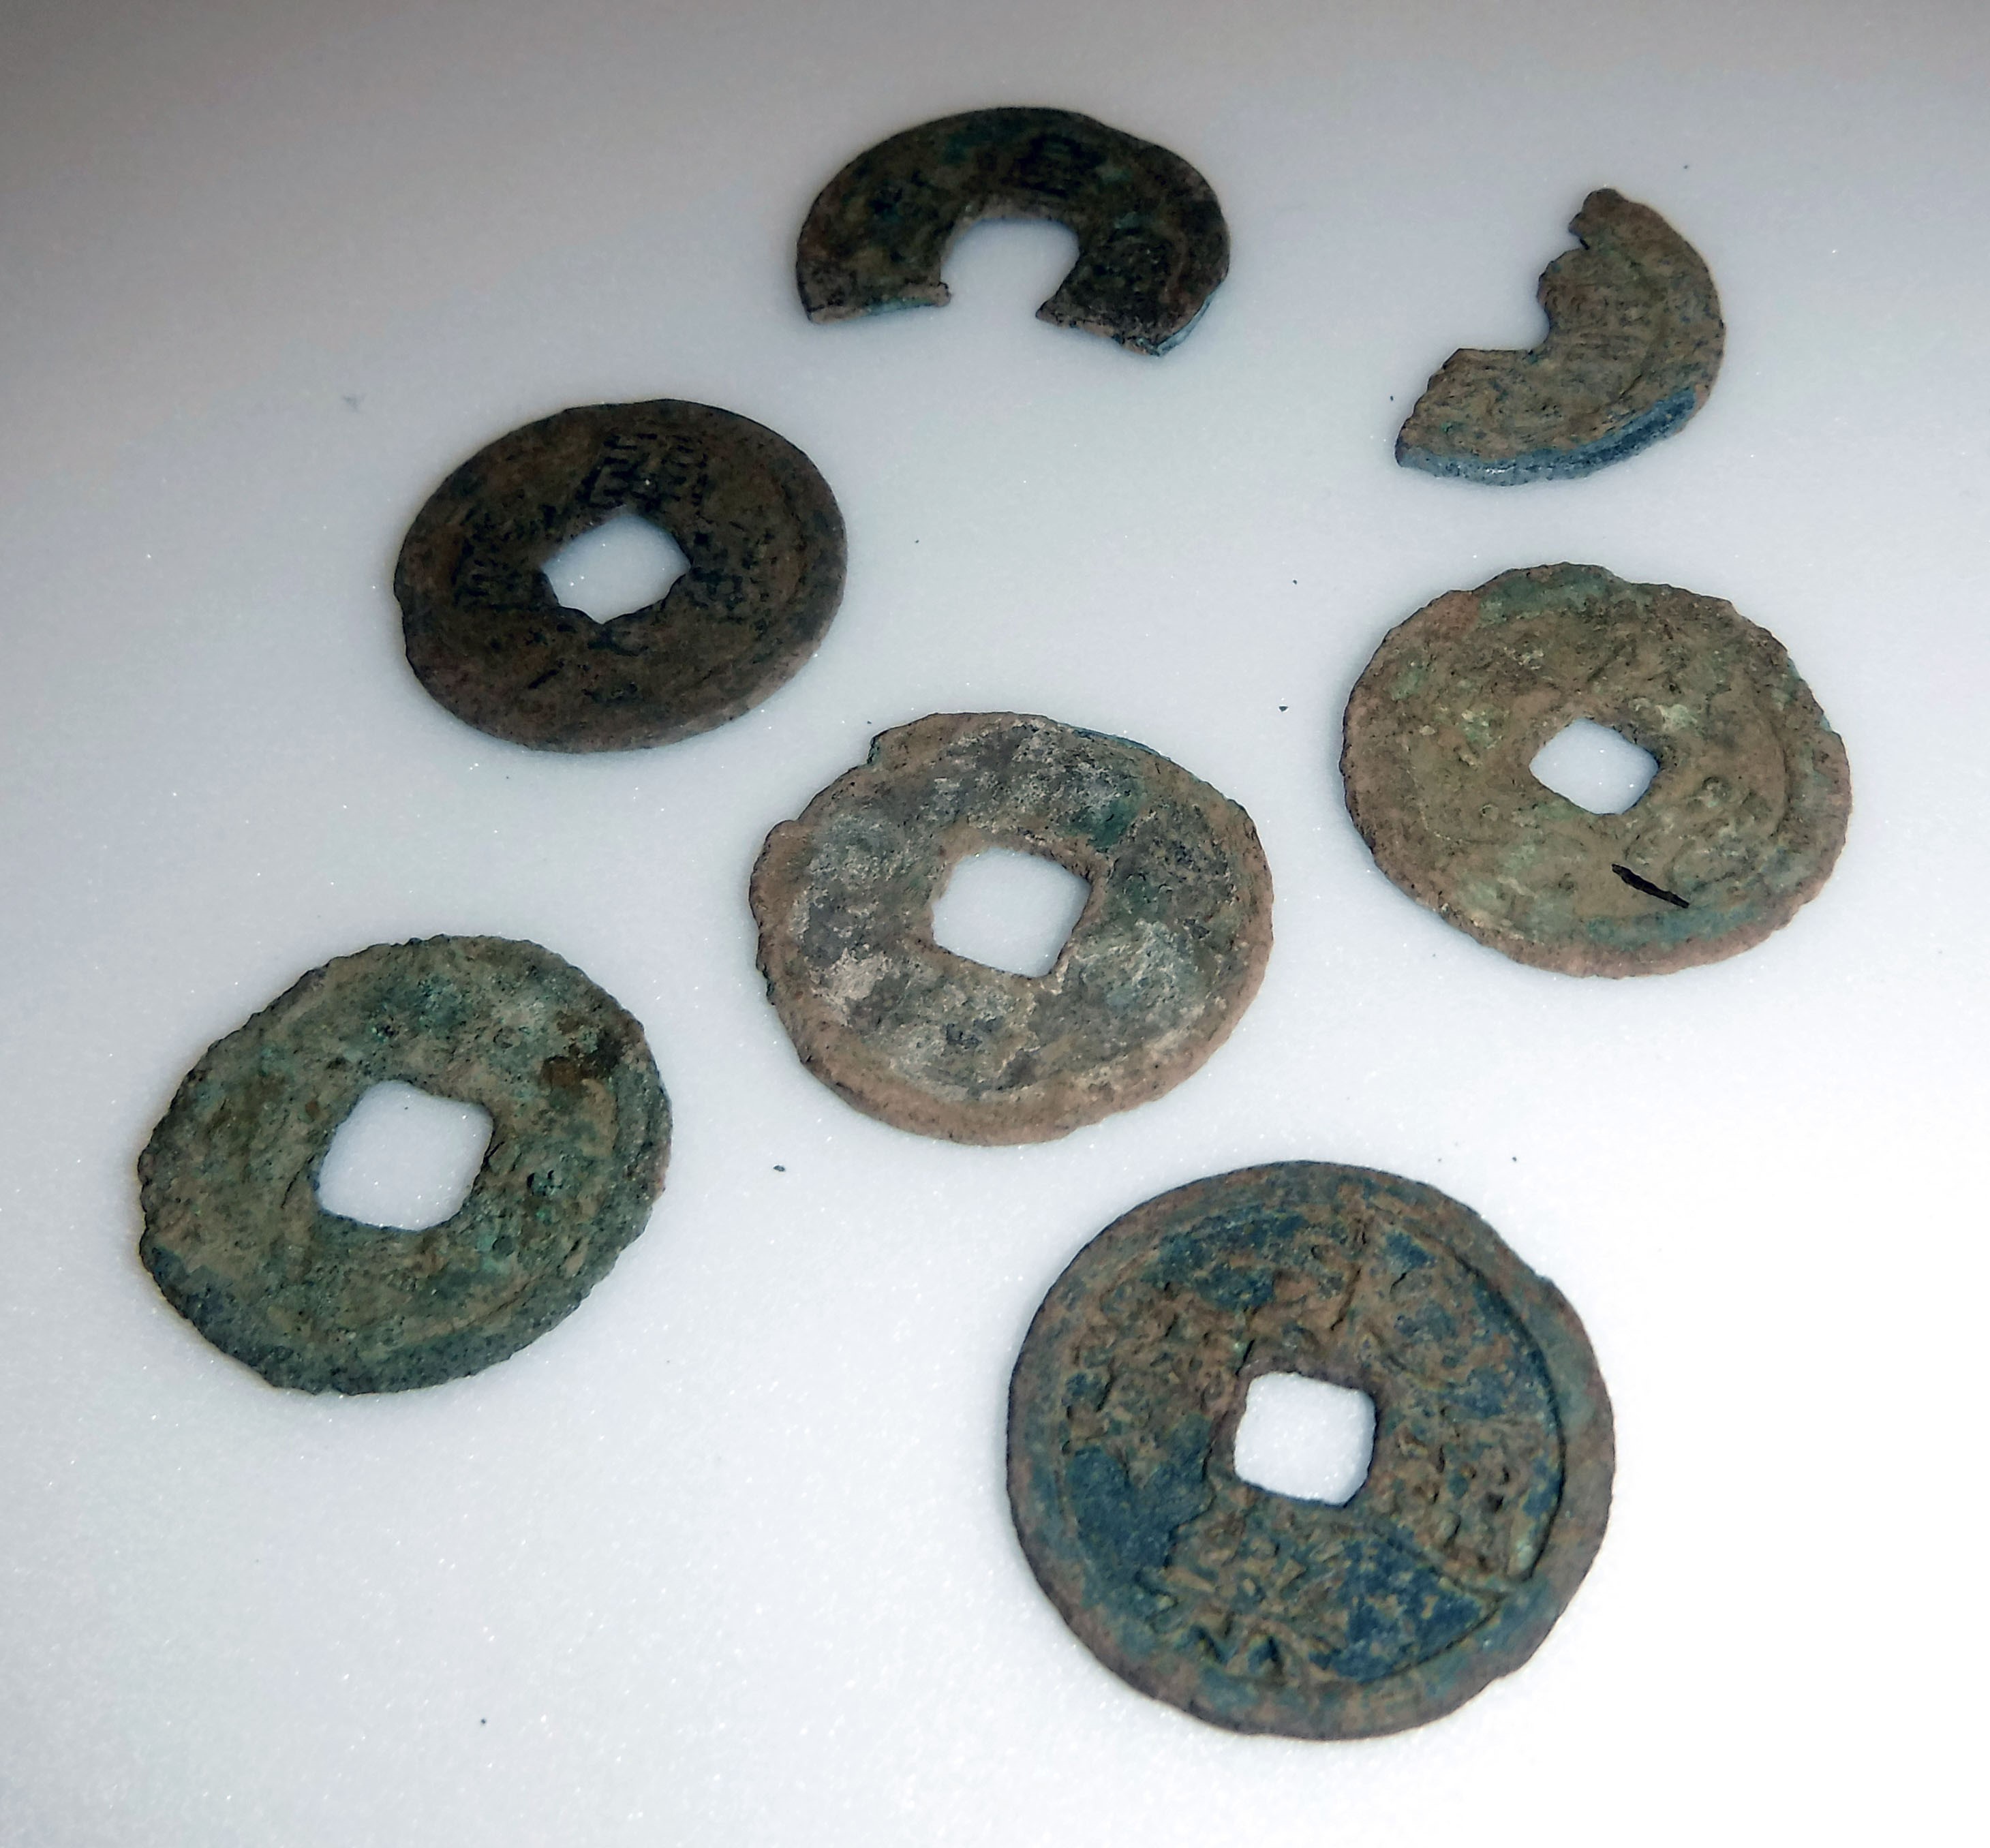 養郷宮之脇遺跡で出土した古銭７枚が写っている写真です。５枚はほぼ完全な形ですが、２枚は半分近くがかけています。表面には緑錆がついています。